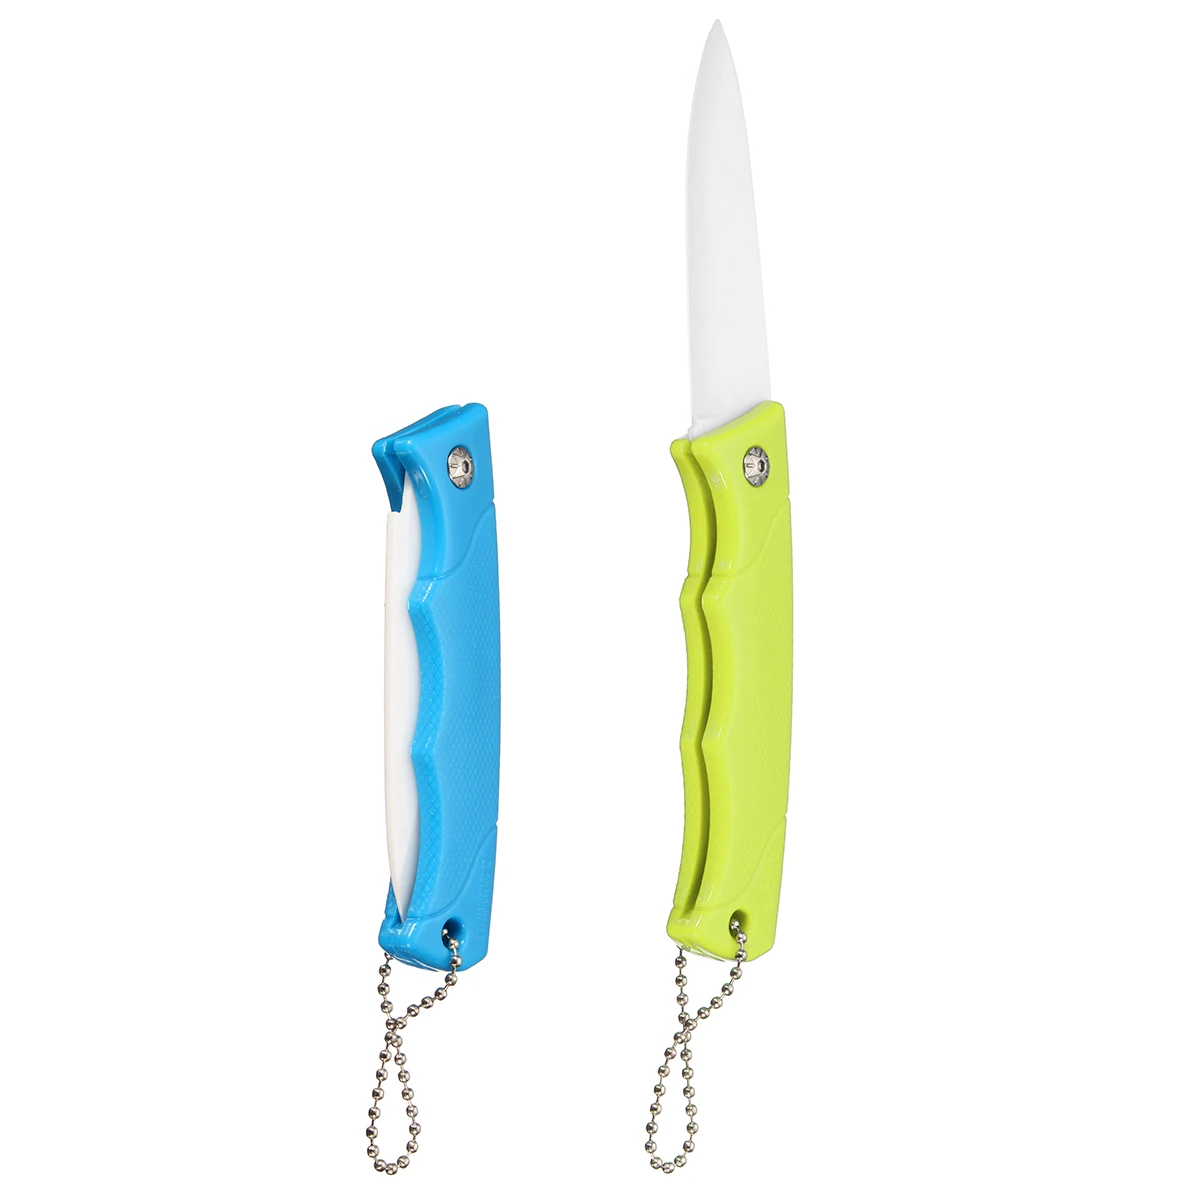 Складной кухонный нож для приготовления фруктов и овощей, керамические ножи для нарезки мяса, 3 с ручкой ABS, синий, зеленый